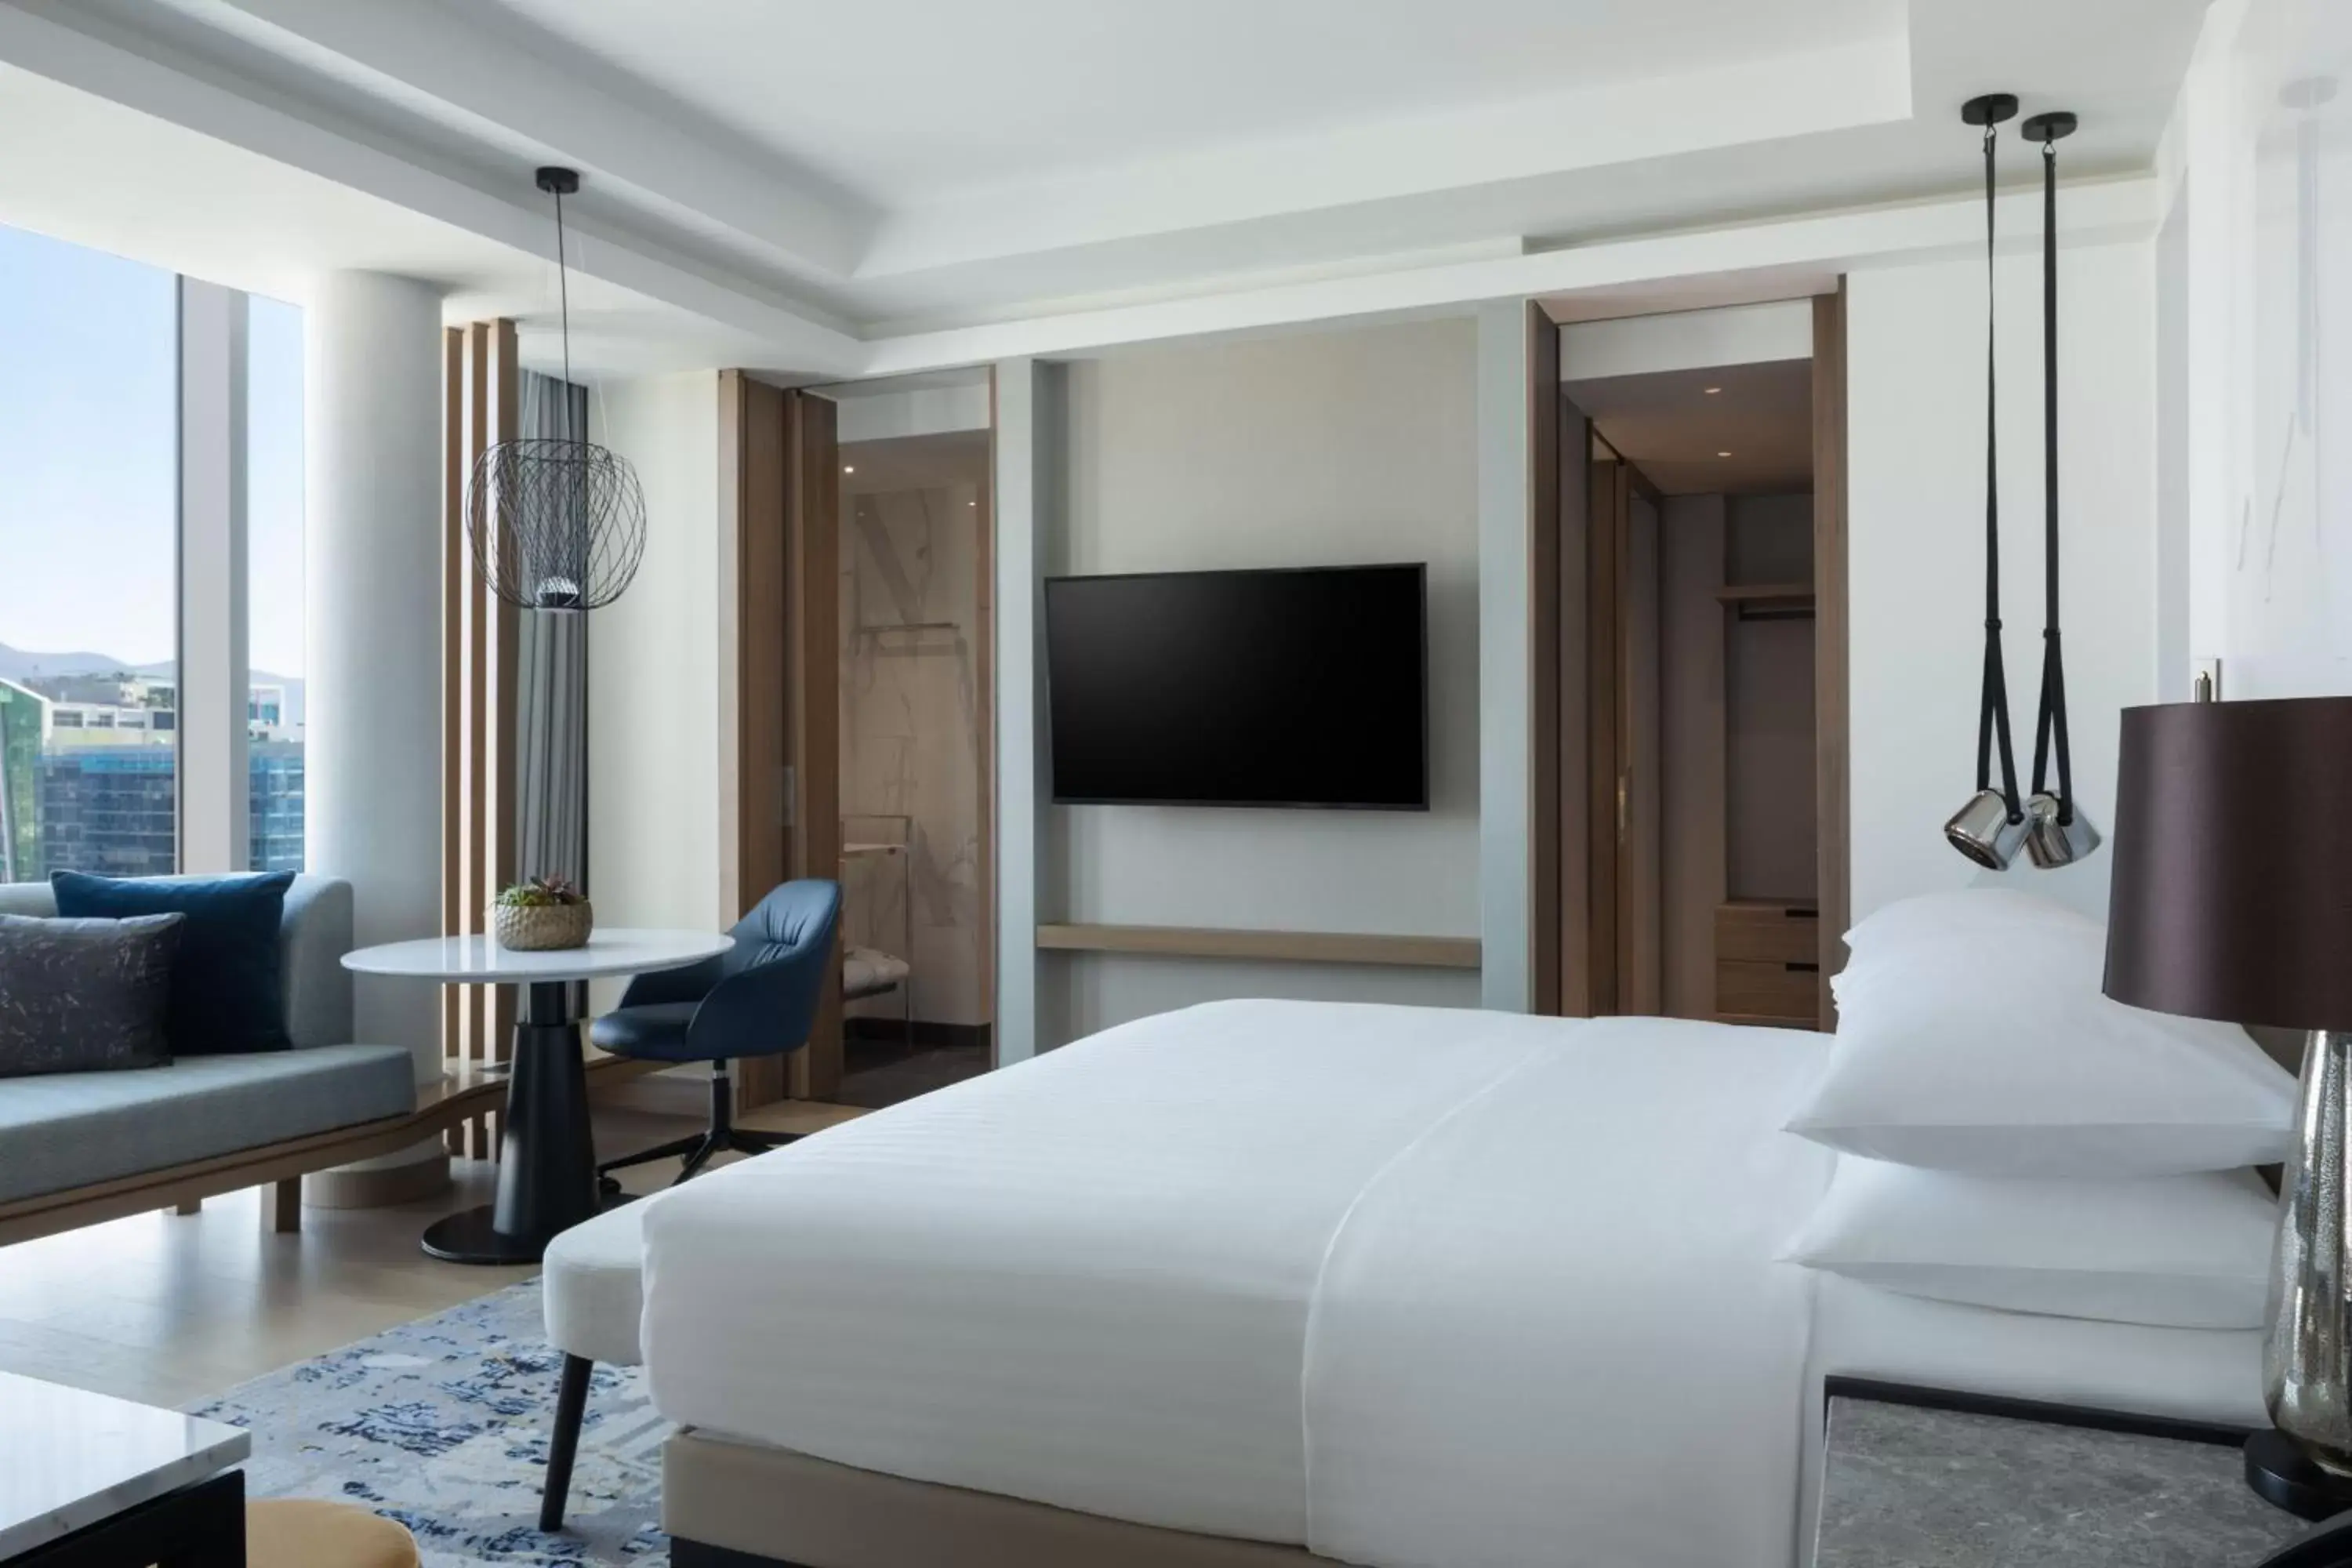 Bedroom, TV/Entertainment Center in Tirana Marriott Hotel